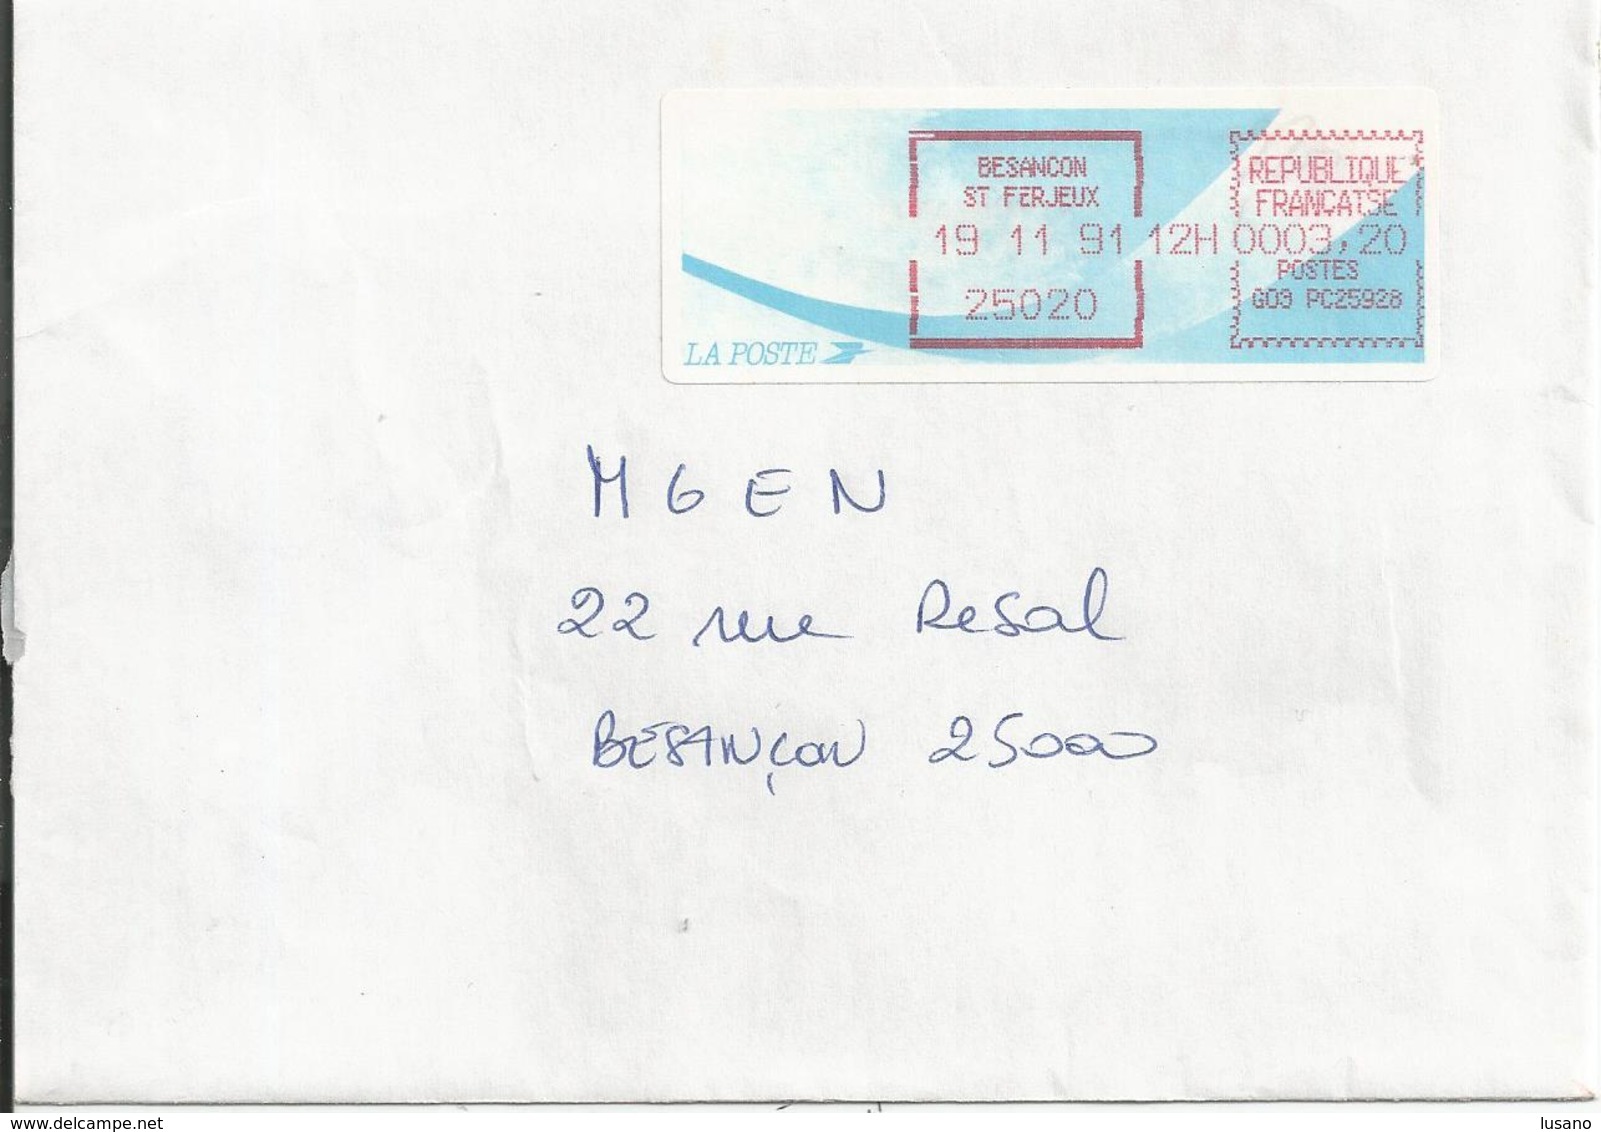 Vignette D'affranchissement Type "Comète" Sur Enveloppe - Bureau De Besançon Saint-Ferjeux (Doubs) - 1988 Type « Comète »